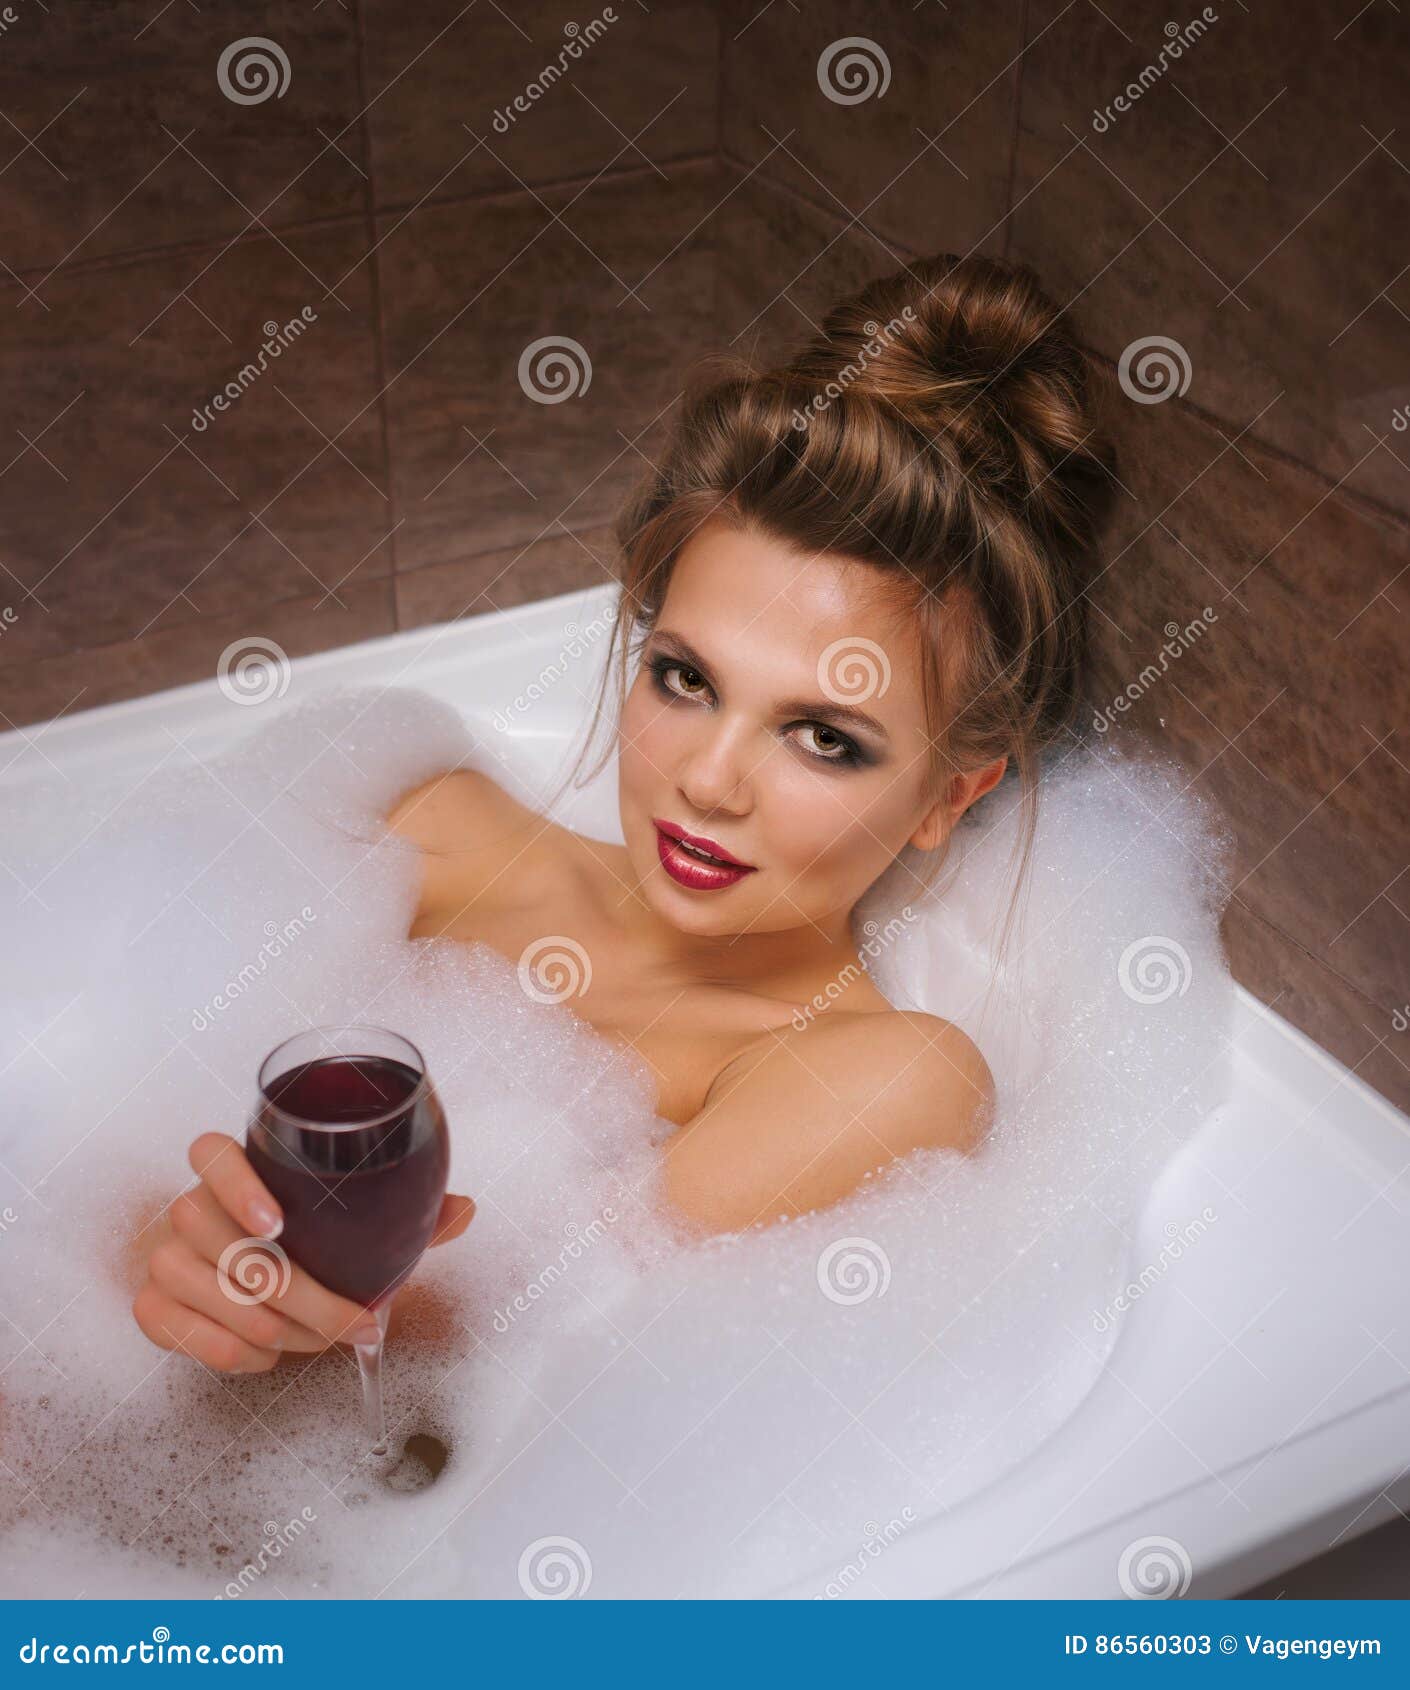 Ванна бокал вина. Девушка в ванной с бокалом. Девушка в ванне с бокалом. Фотосессия в ванной с бокалом. Фотосессия в ванной с шампанским.